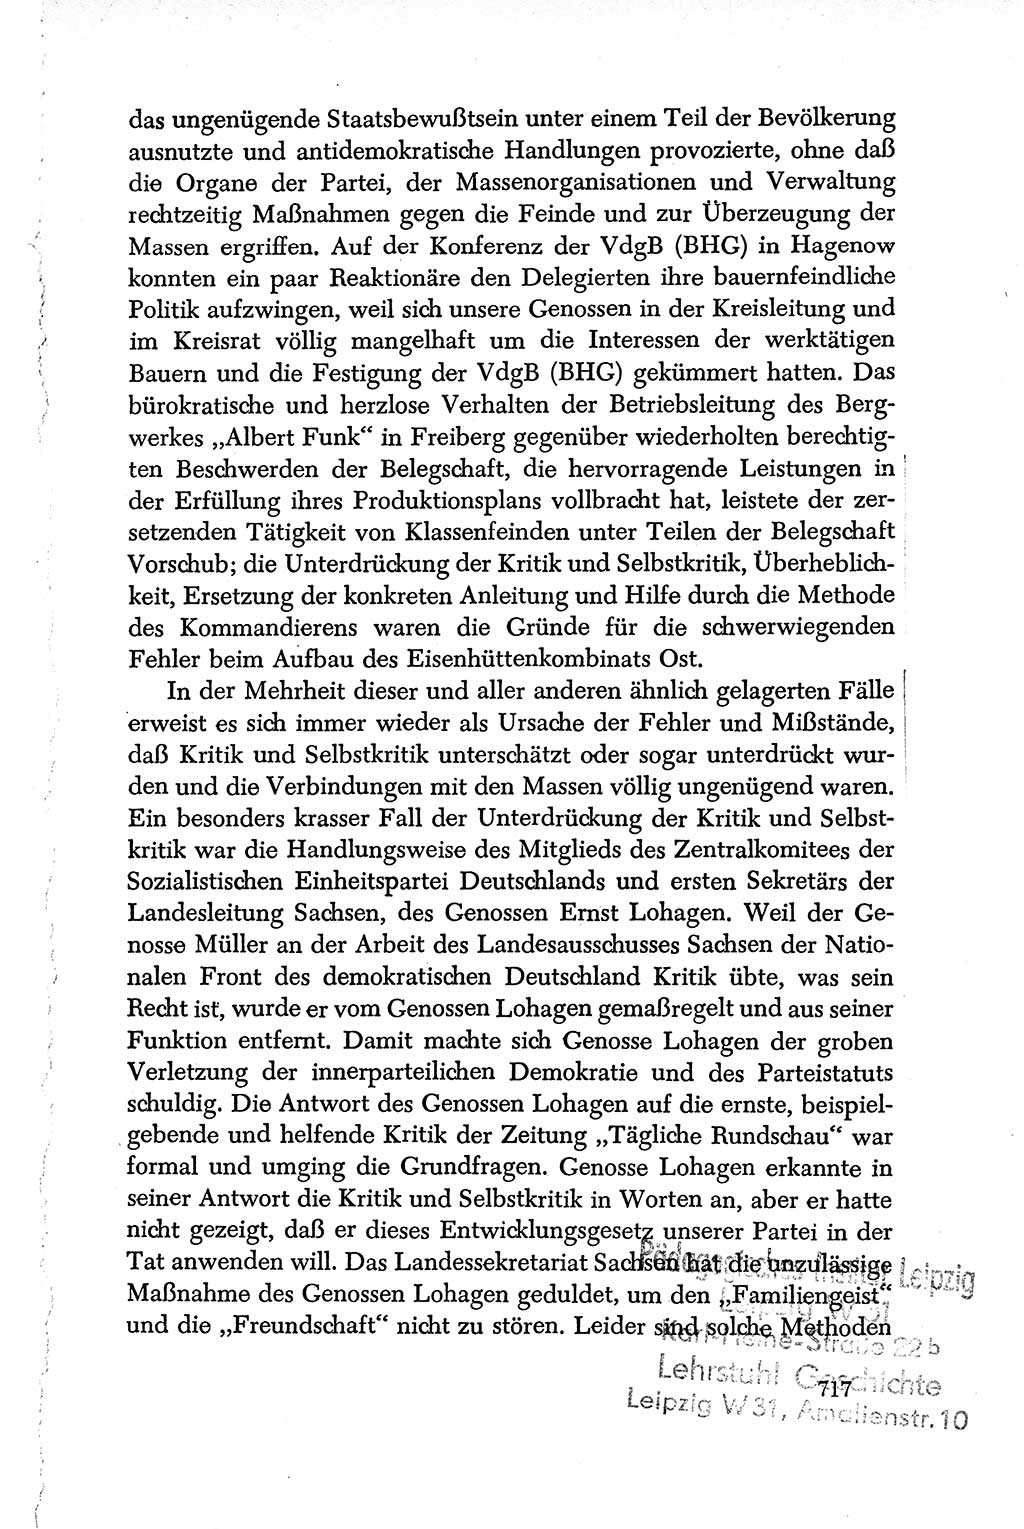 Dokumente der Sozialistischen Einheitspartei Deutschlands (SED) [Deutsche Demokratische Republik (DDR)] 1950-1952, Seite 717 (Dok. SED DDR 1950-1952, S. 717)